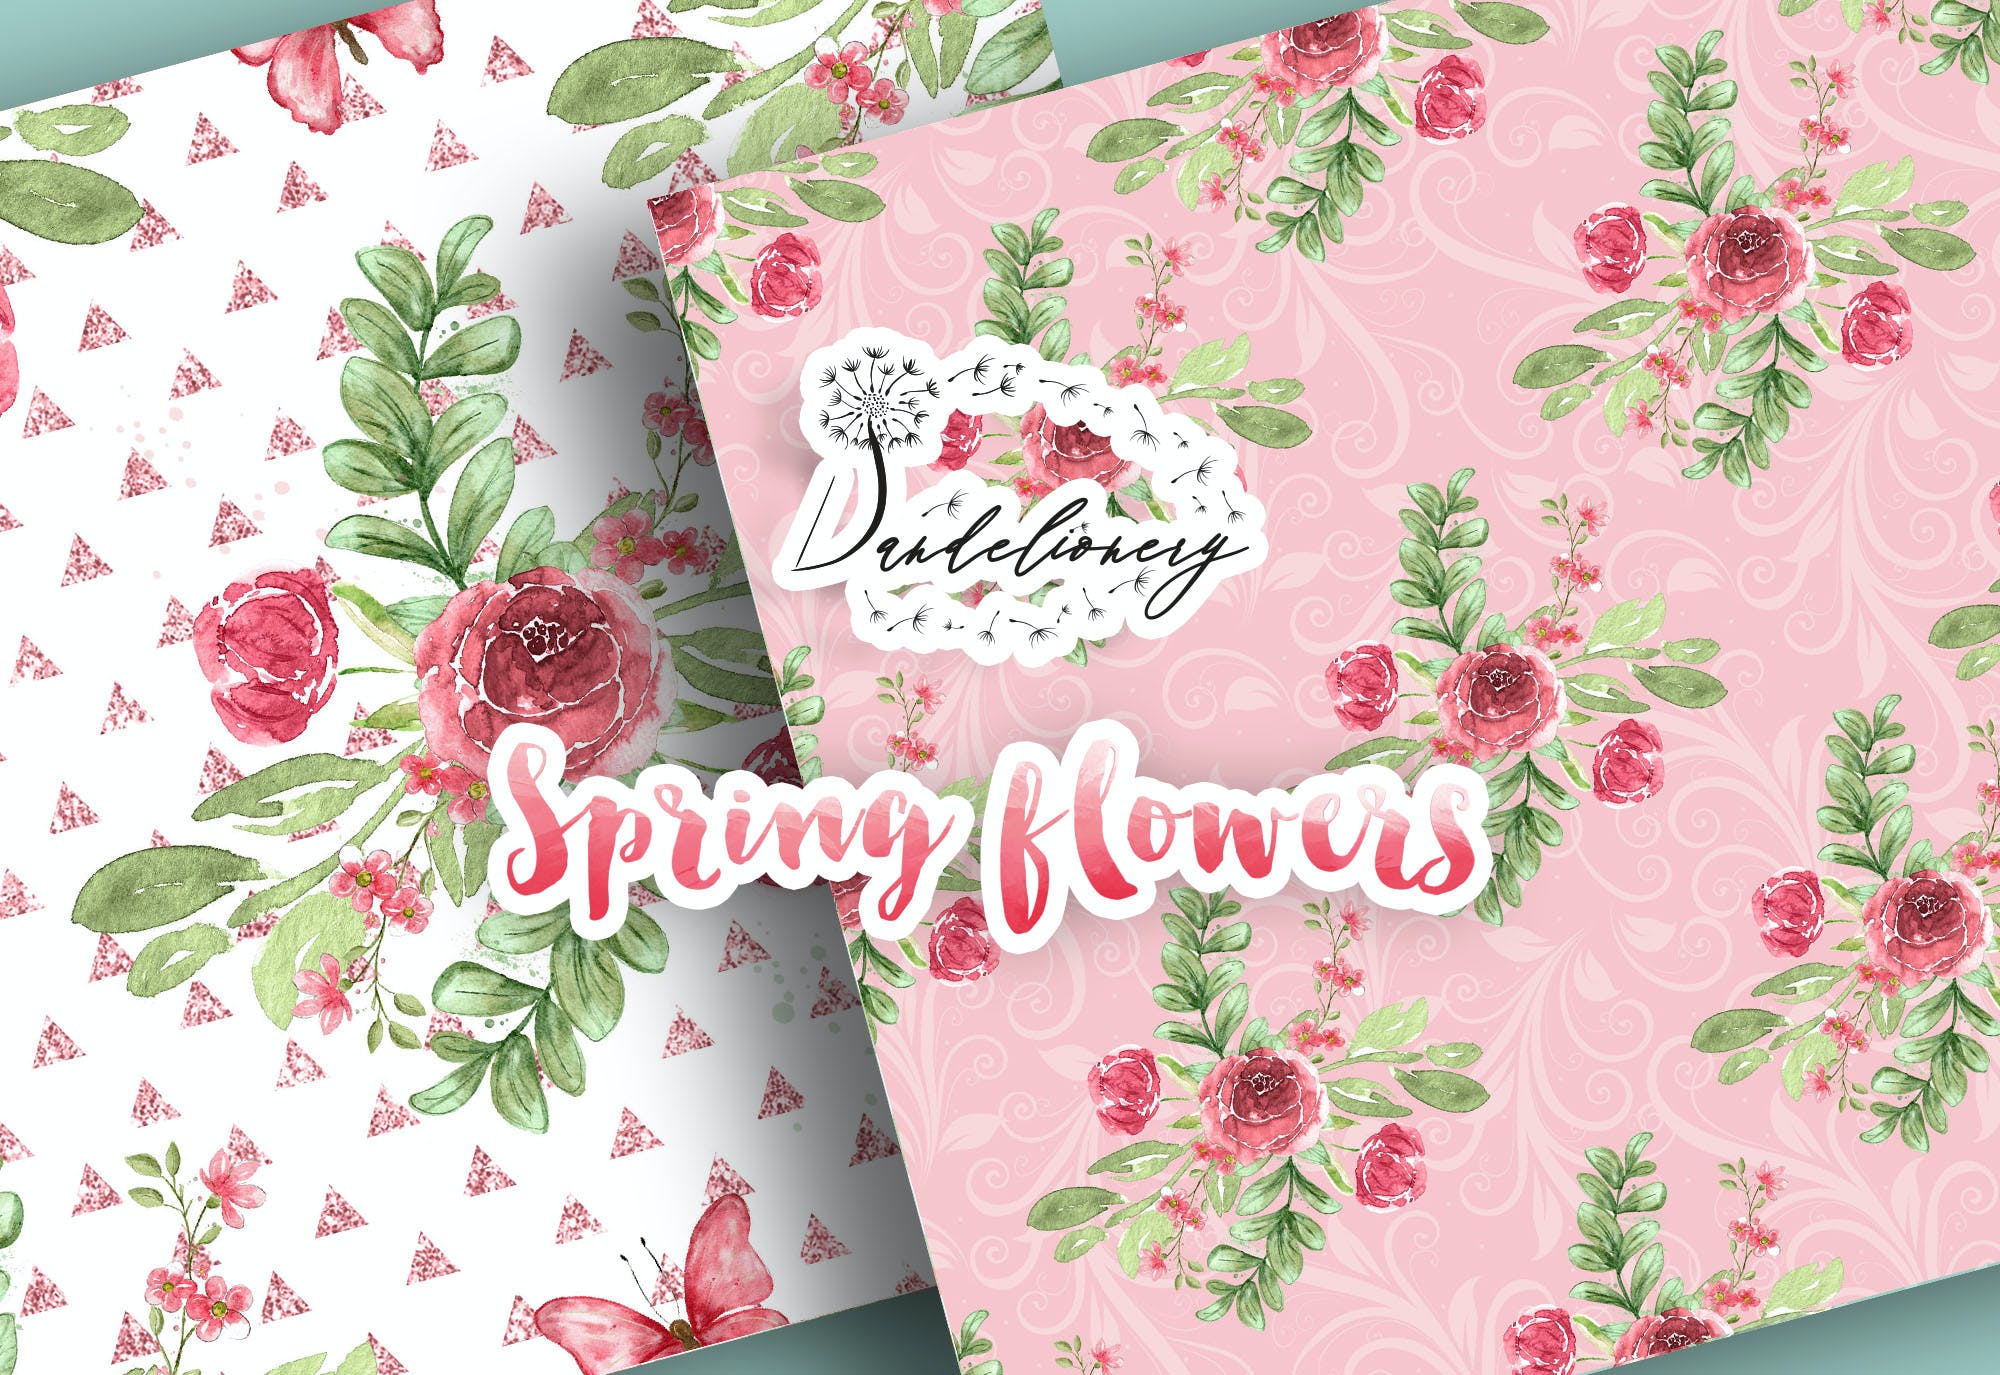 水彩春天花朵数码纸图案素材包 Spring flowers digital paper pack 设计素材 第6张